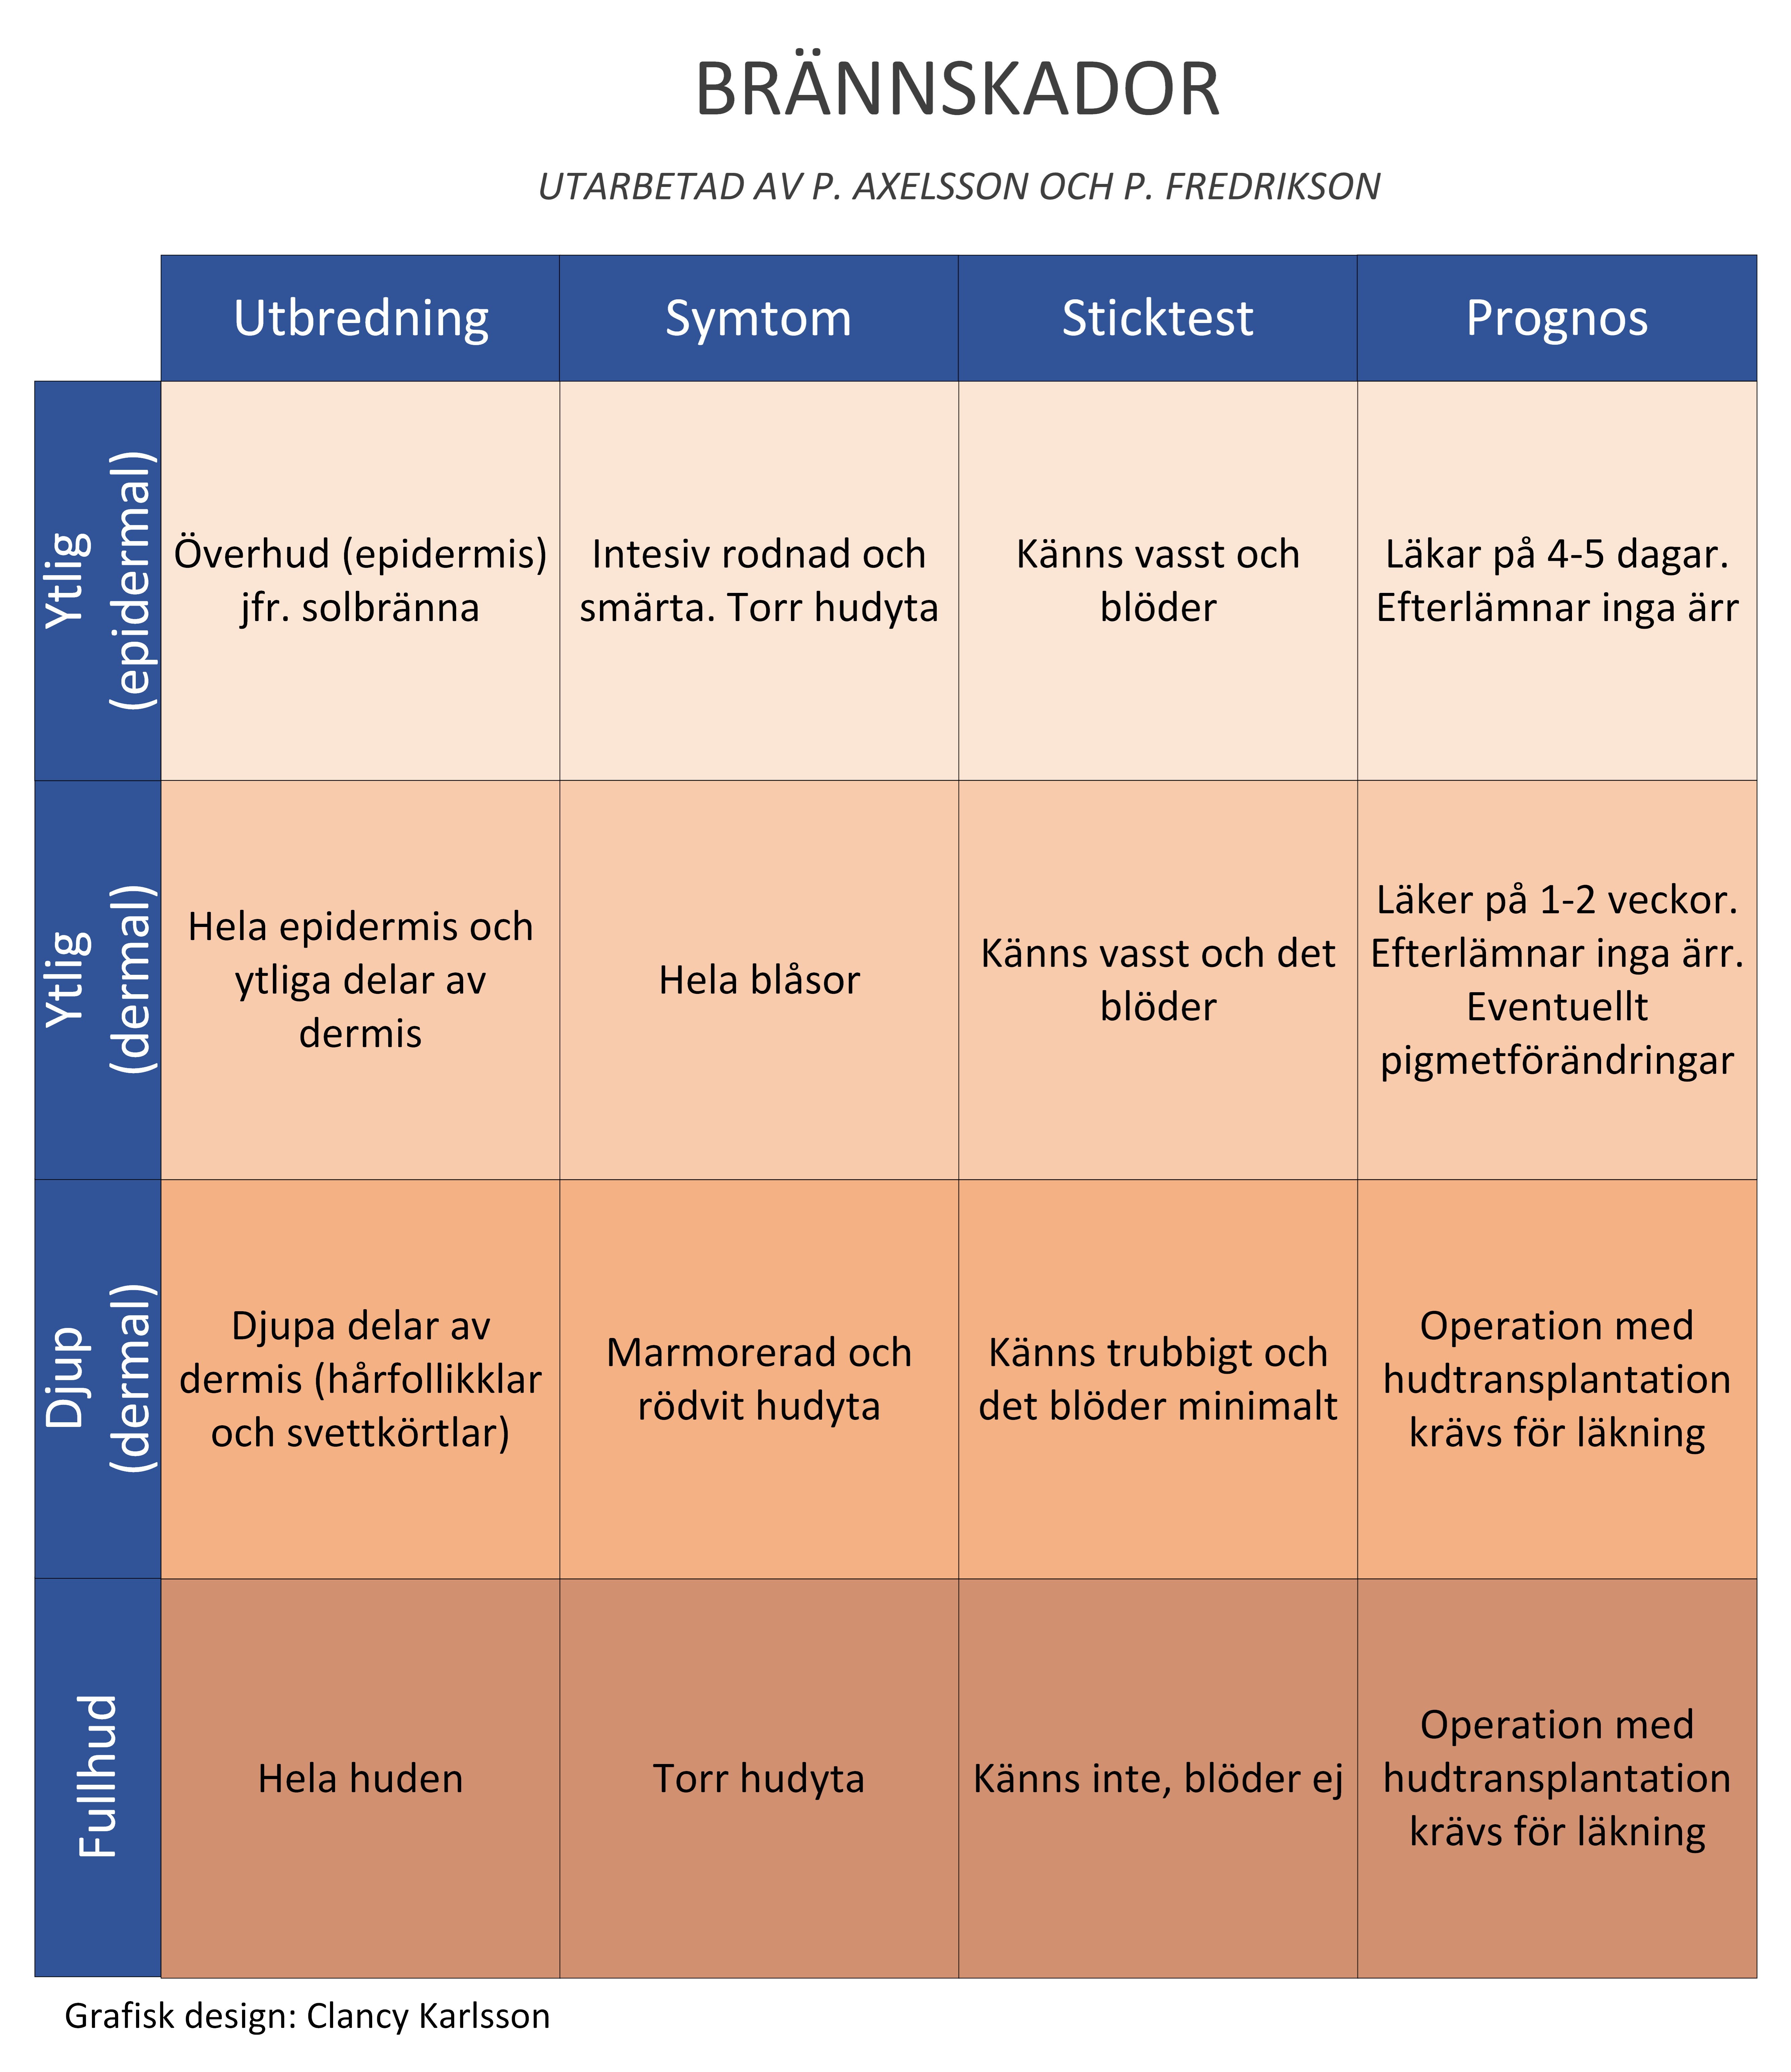 Tabellen som beskriver klinisk bedömning av olika typ av brännskador